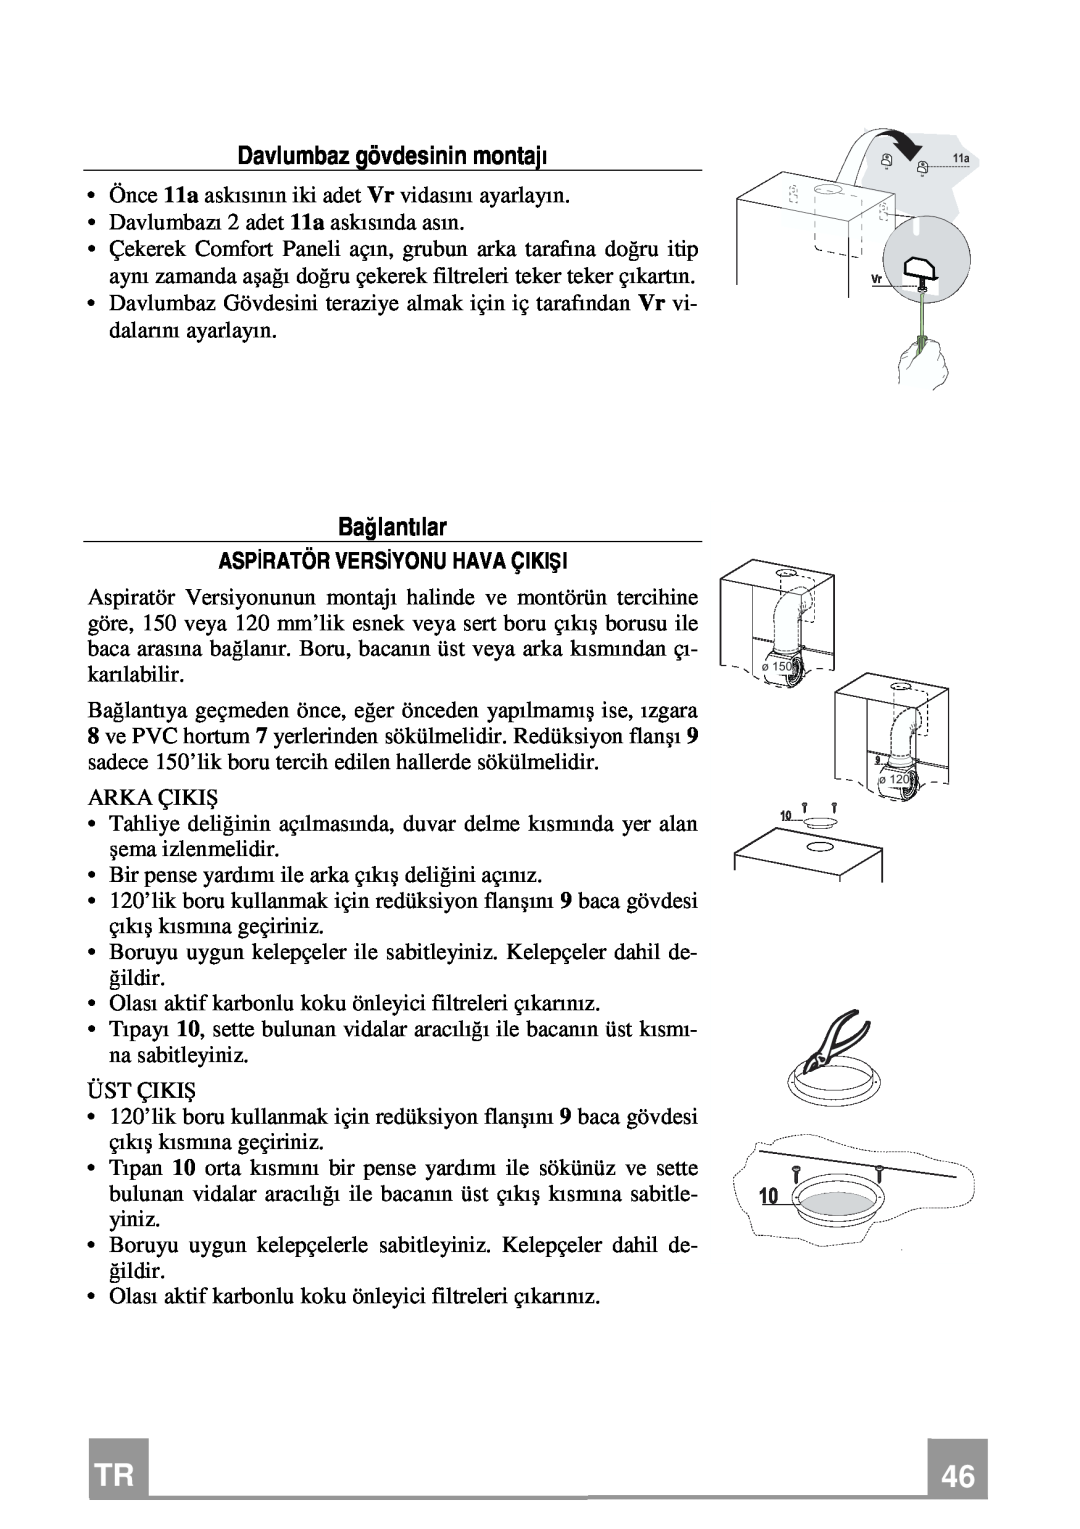 Franke Consumer Products FCR 708-H TC manual Davlumbaz gövdesinin montajı, Bağlantılar, Aspiratör Versiyonu Hava Çikişi 